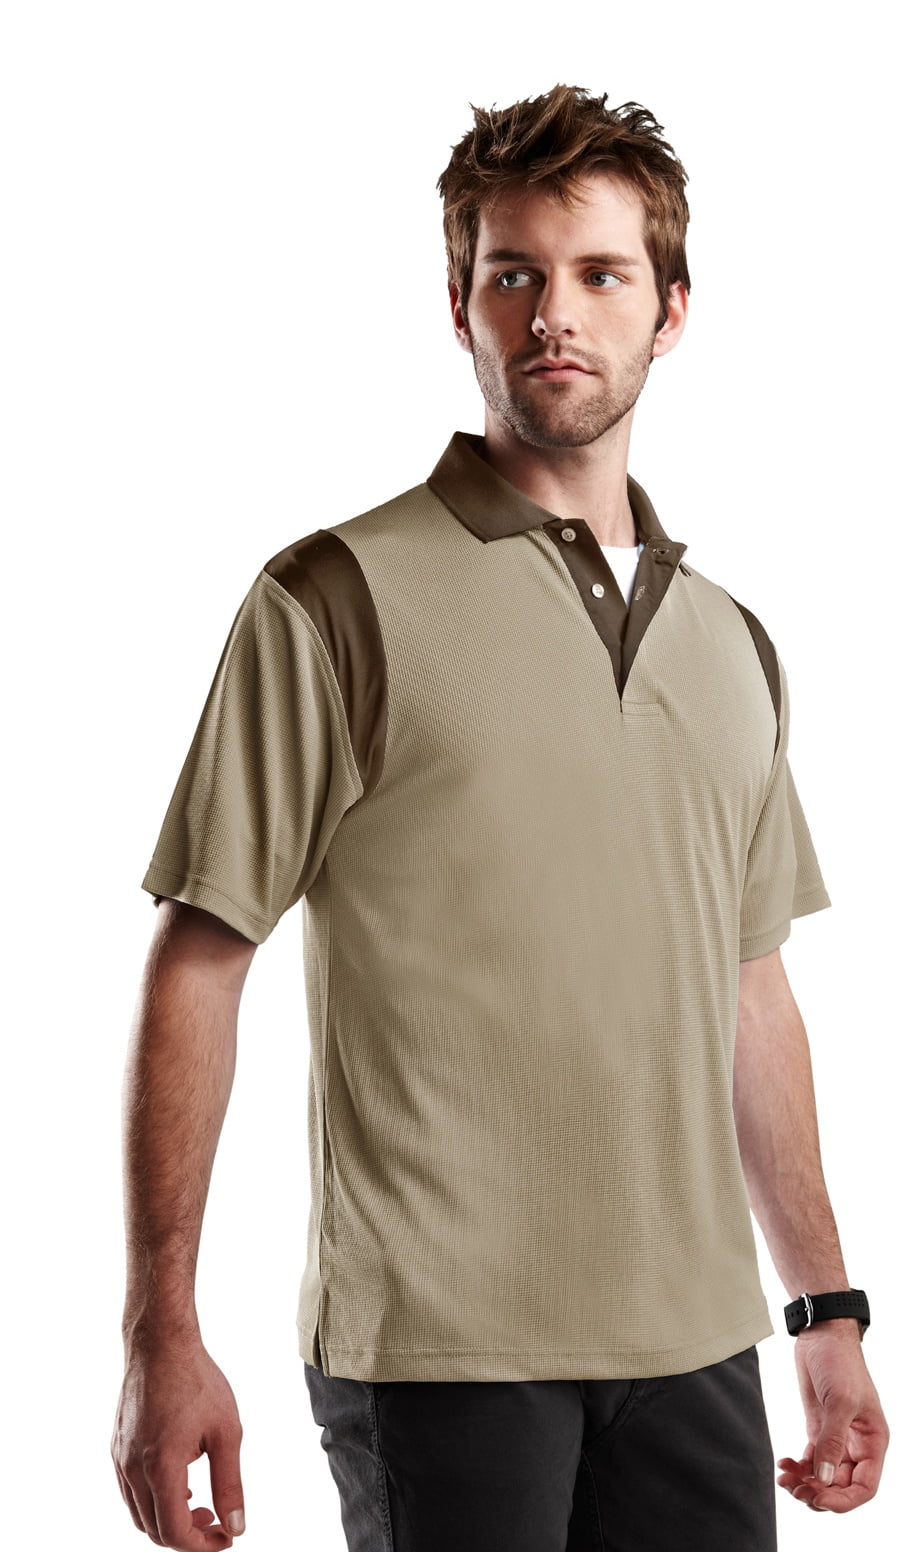 Tri-Mountain Racewear Cheap Spotter 217 Short Sleeve Golf Shirt, Large ...